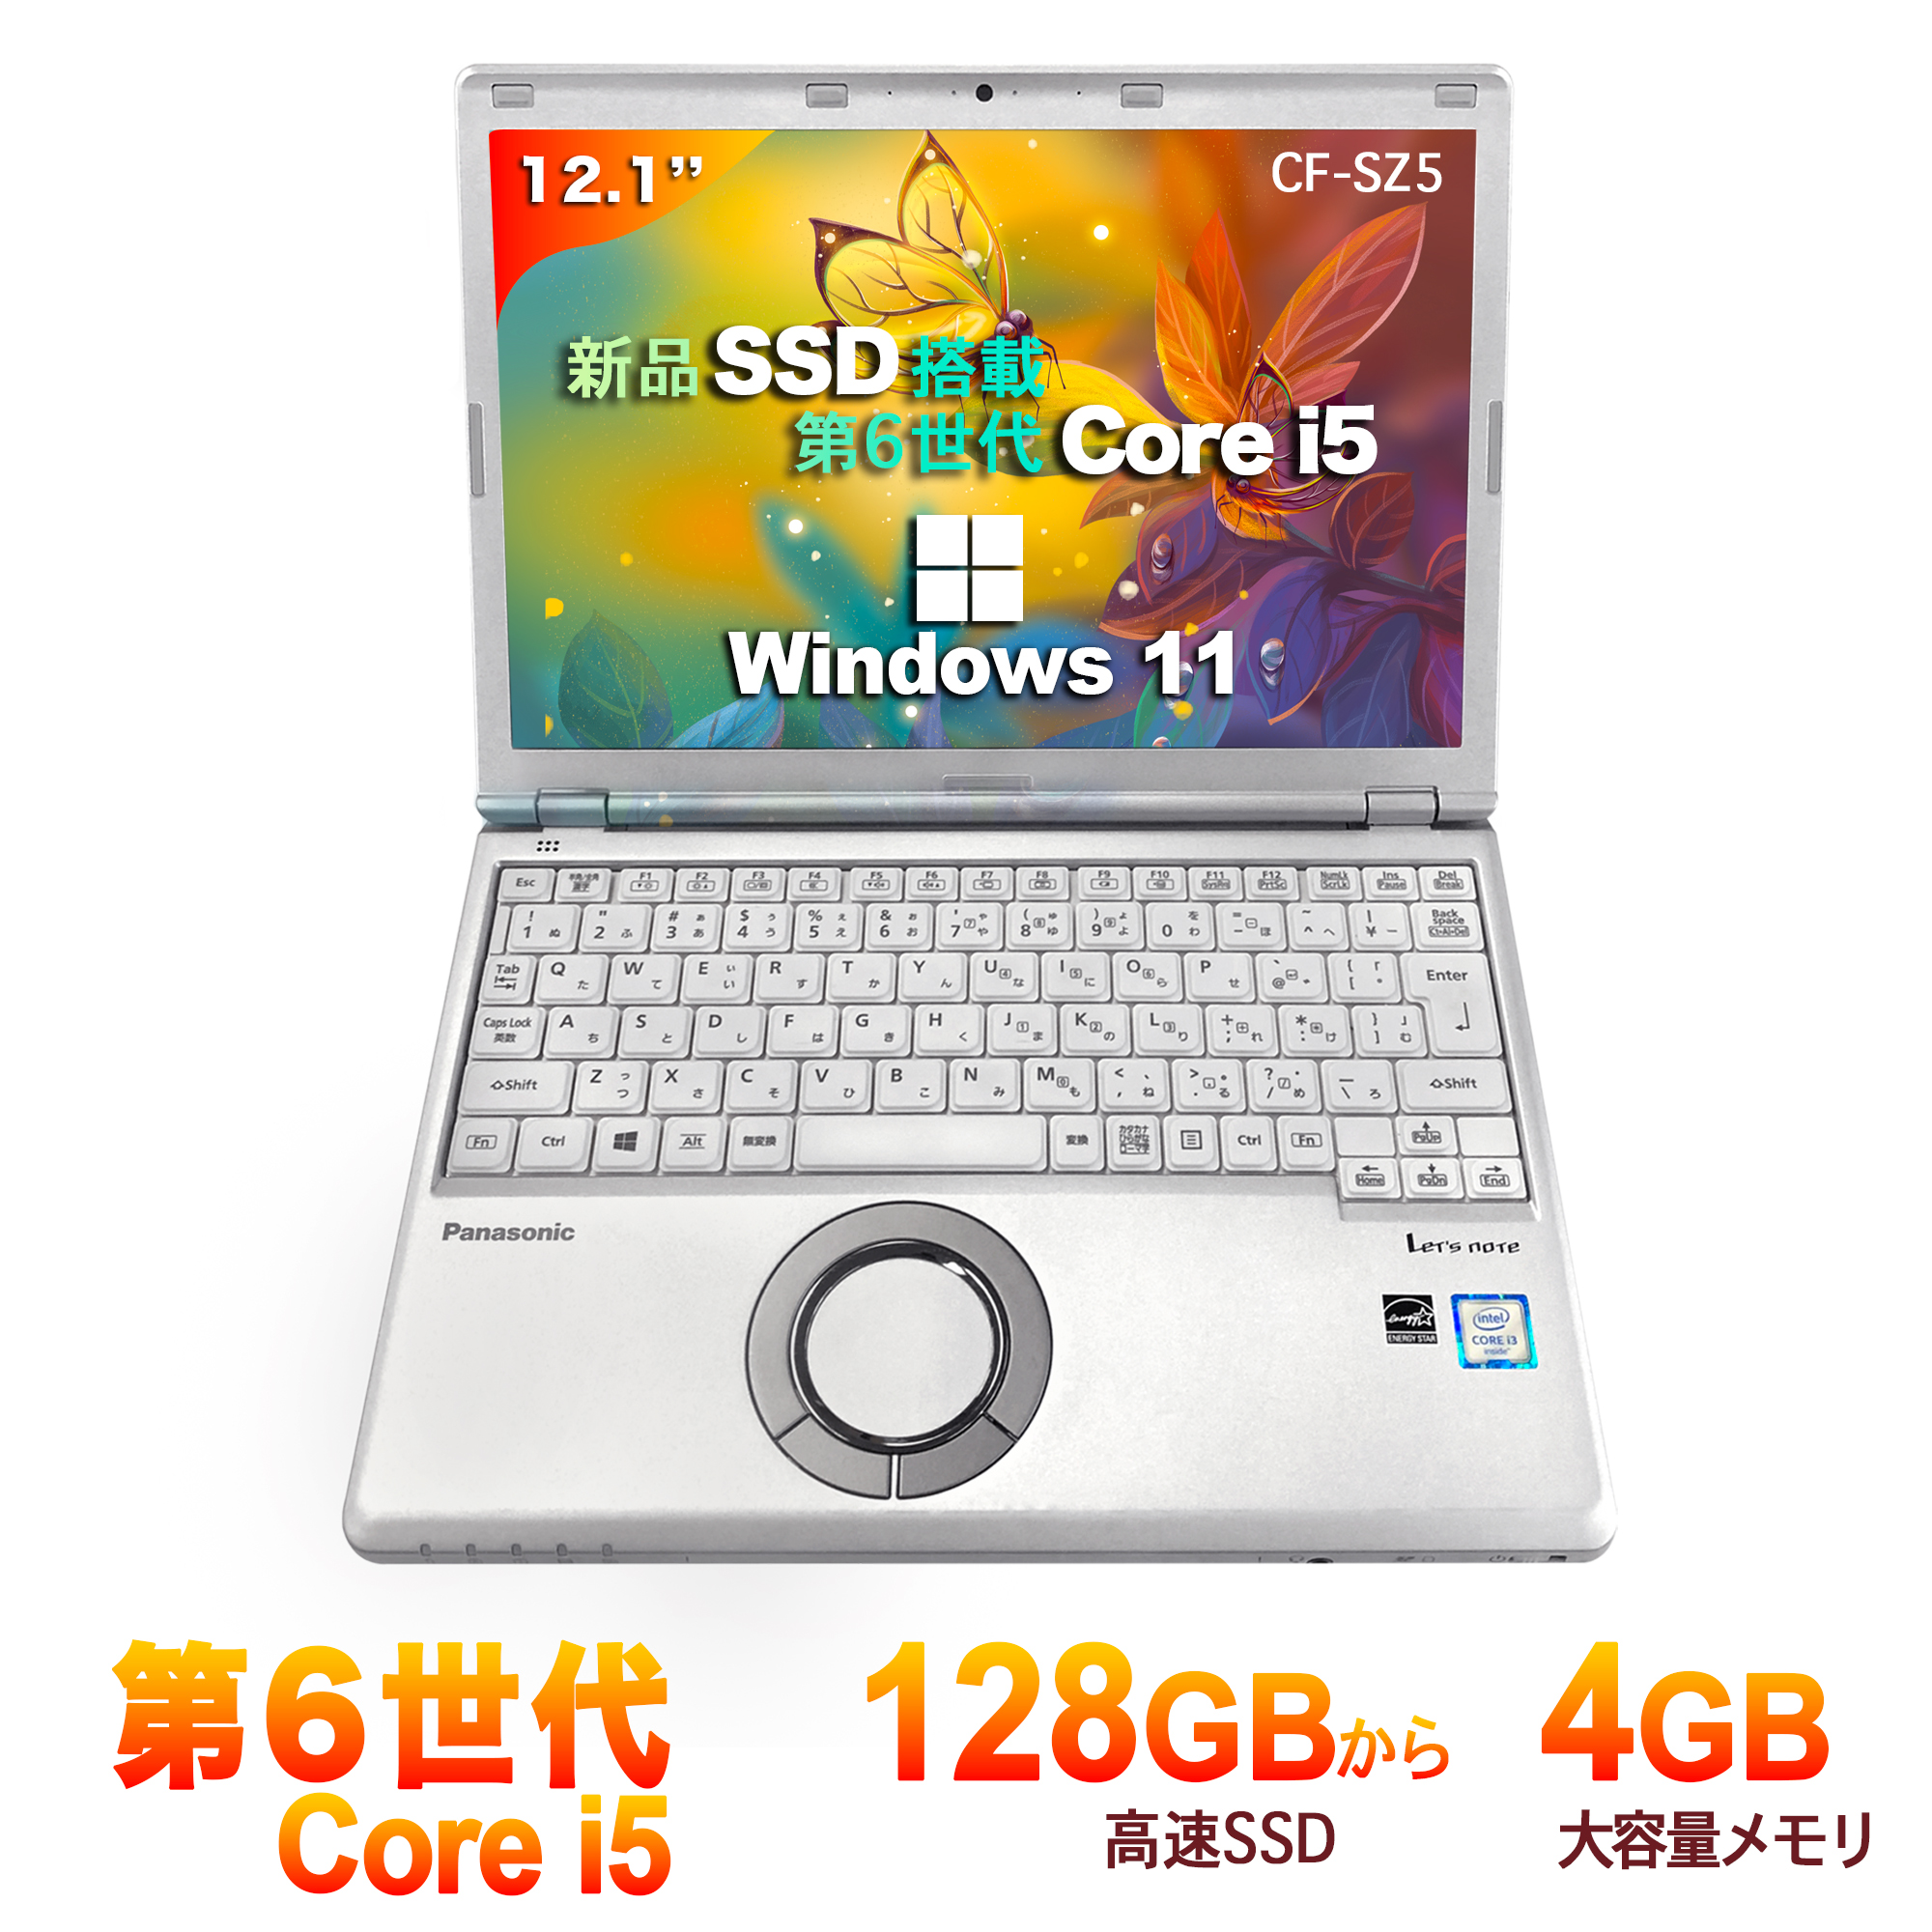 オンライン販売済み パソコン ノートパソコン Panasonic CF-SZ5 第六